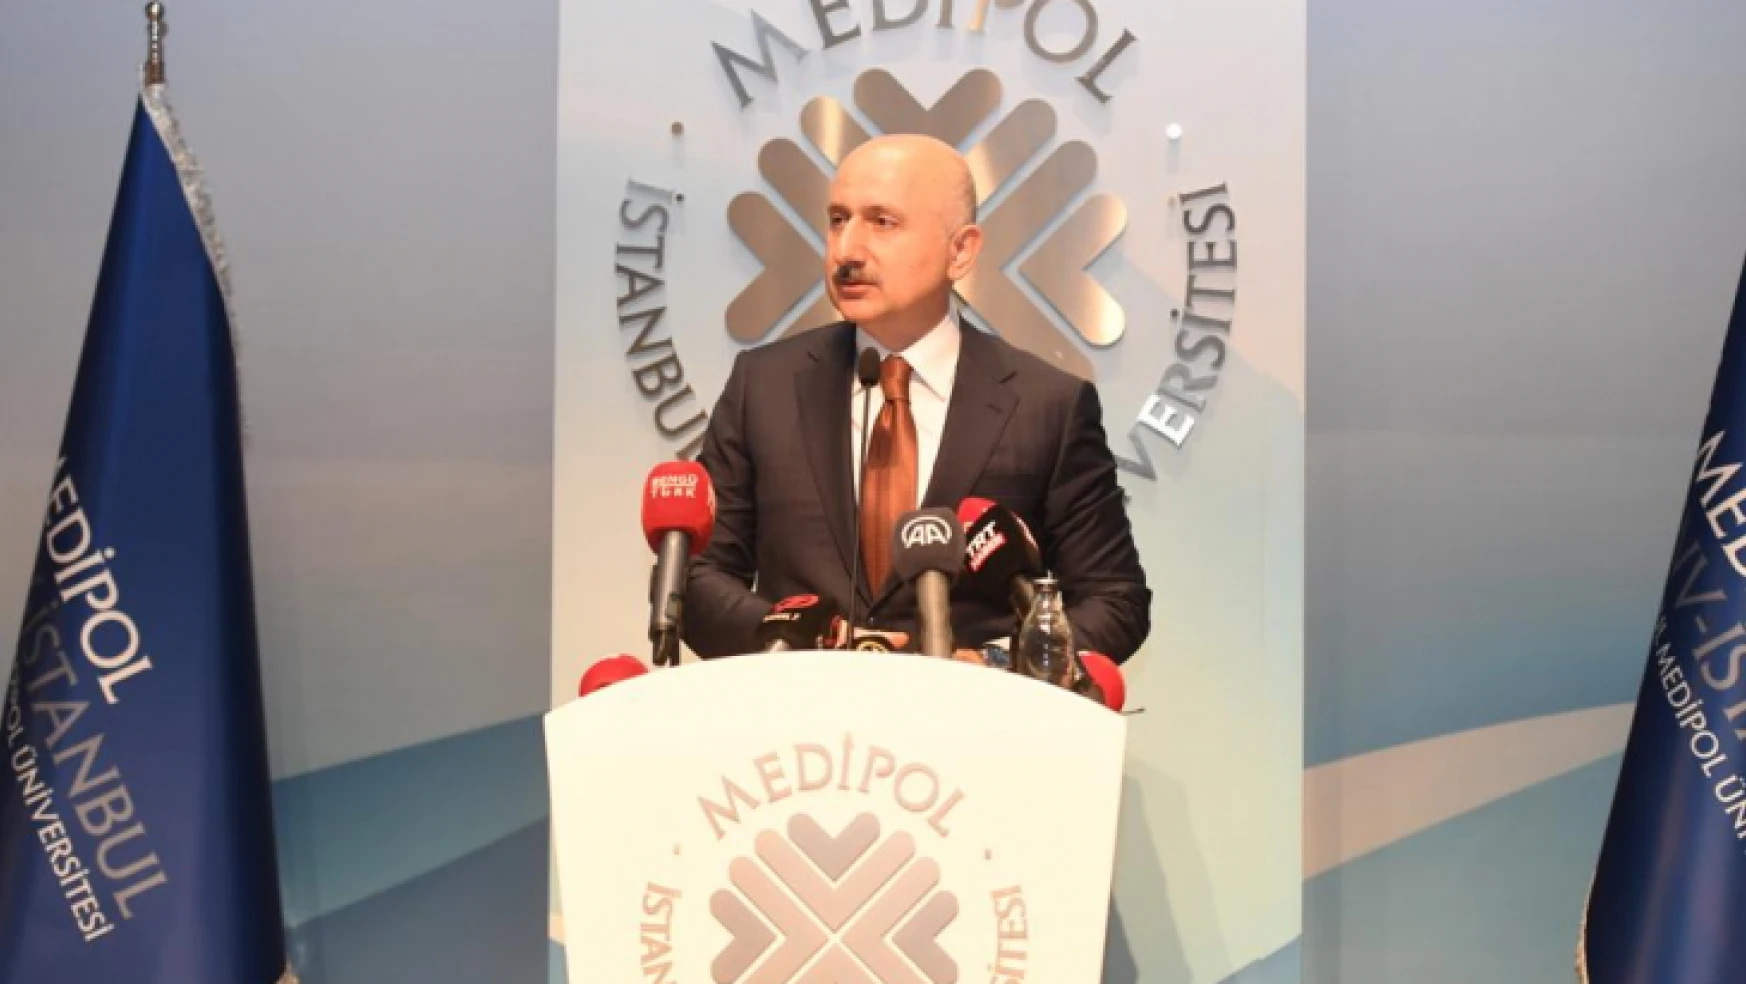 Ulaştırma ve Altyapı Bakanı Adil Karaismailoğlu,İstanbul Medipol Üniversitesi Dördüncü 6G Konferansı'nın açılışında konuştu